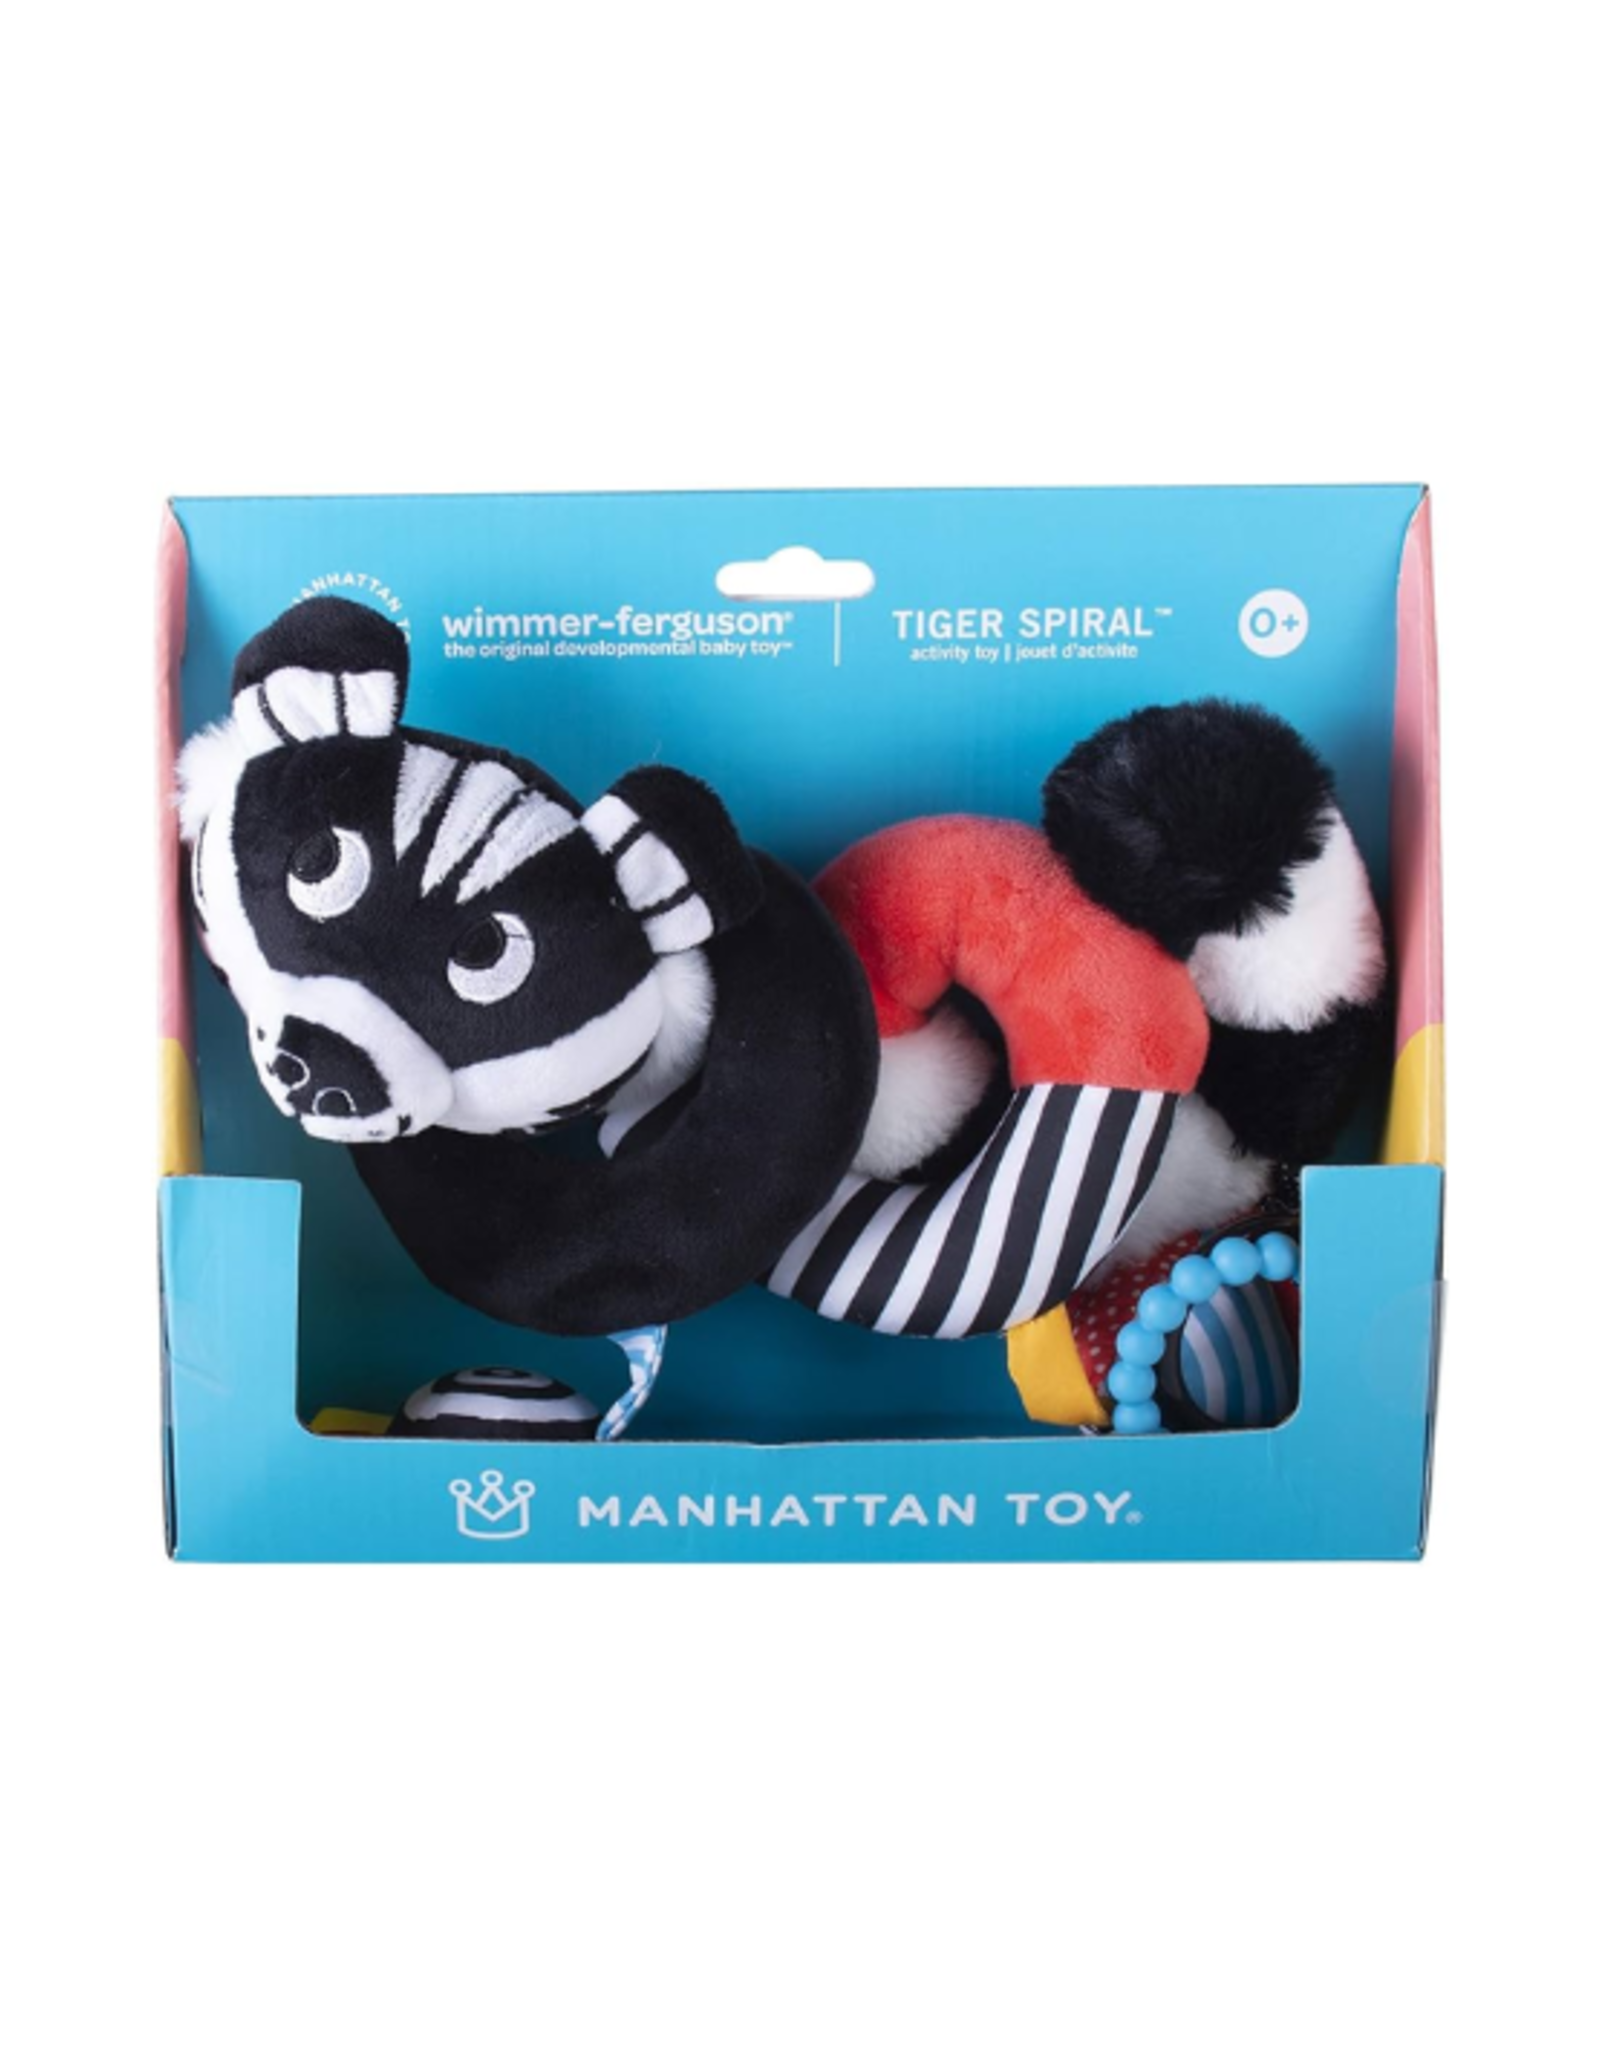 Manhattan Toy Company Manhattan Toy Co - Wimmer Ferguson Tiger Spiral